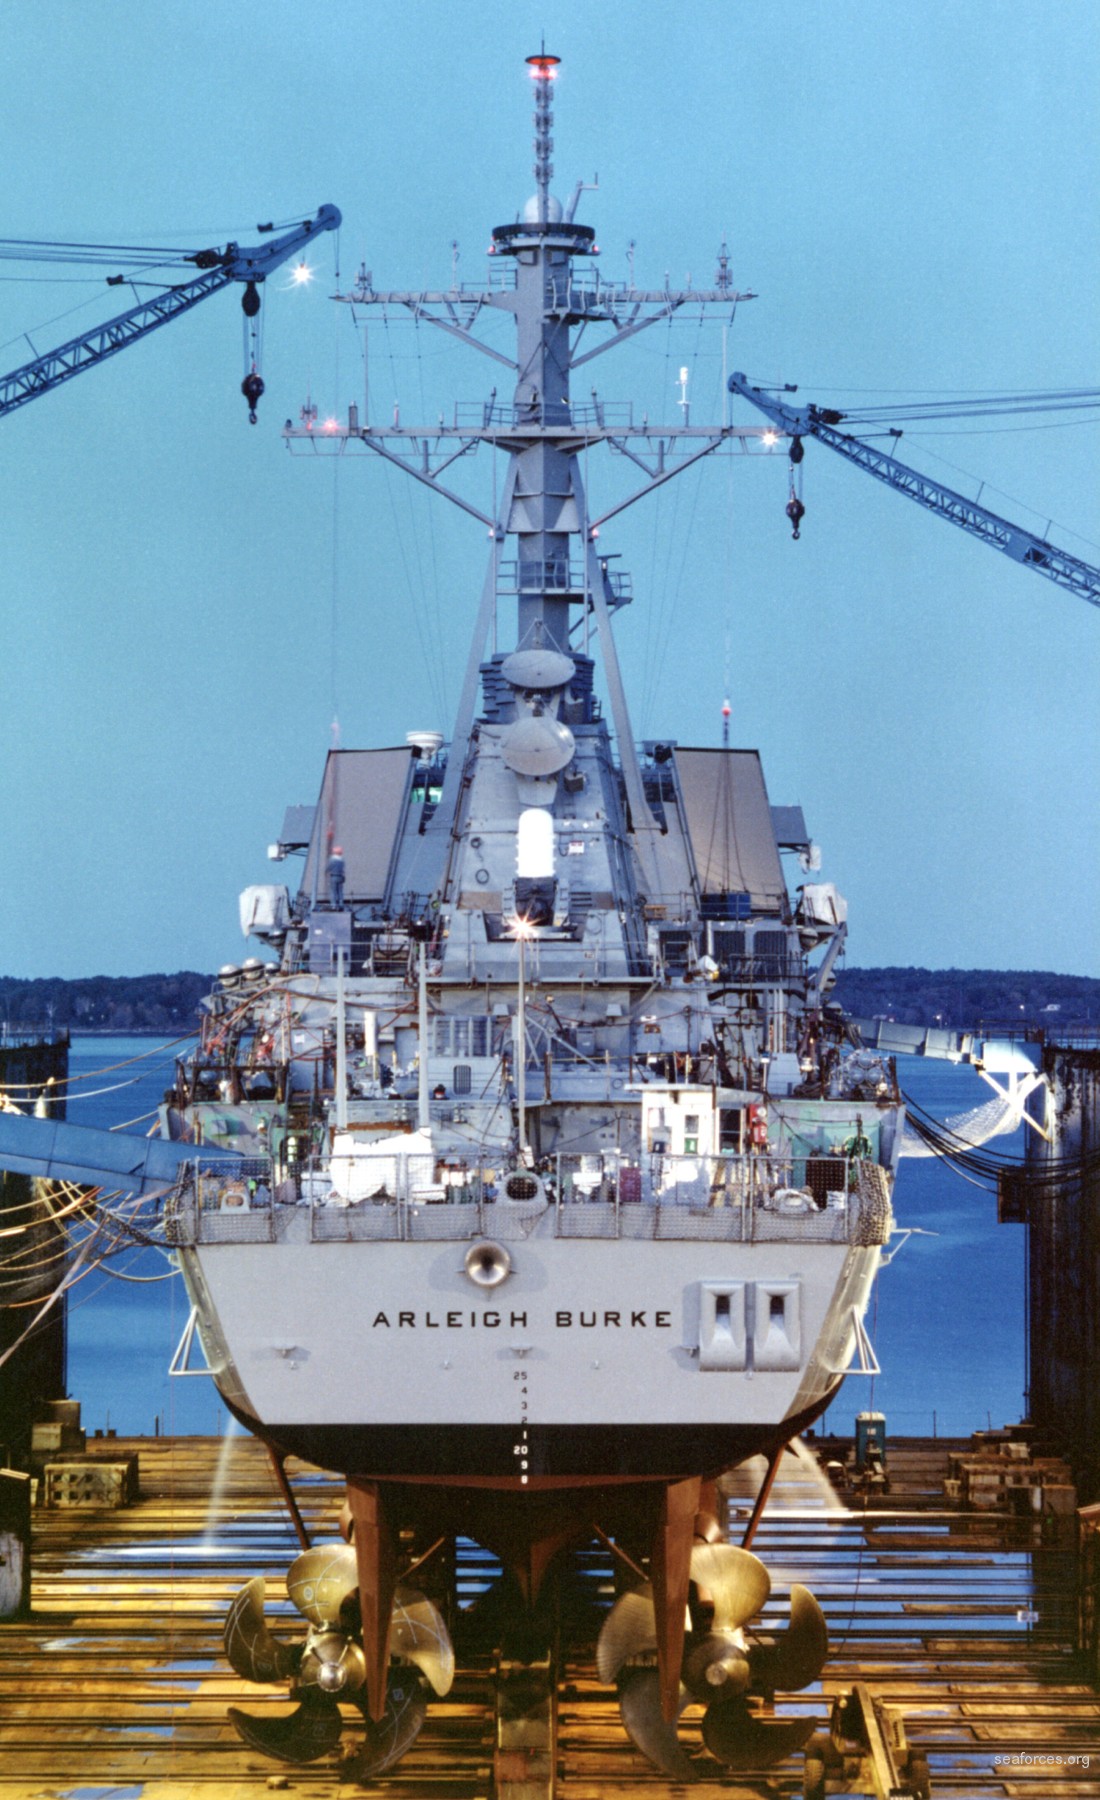 ddg-51 uss arleigh burke destroyer us navy 78 bath iron works